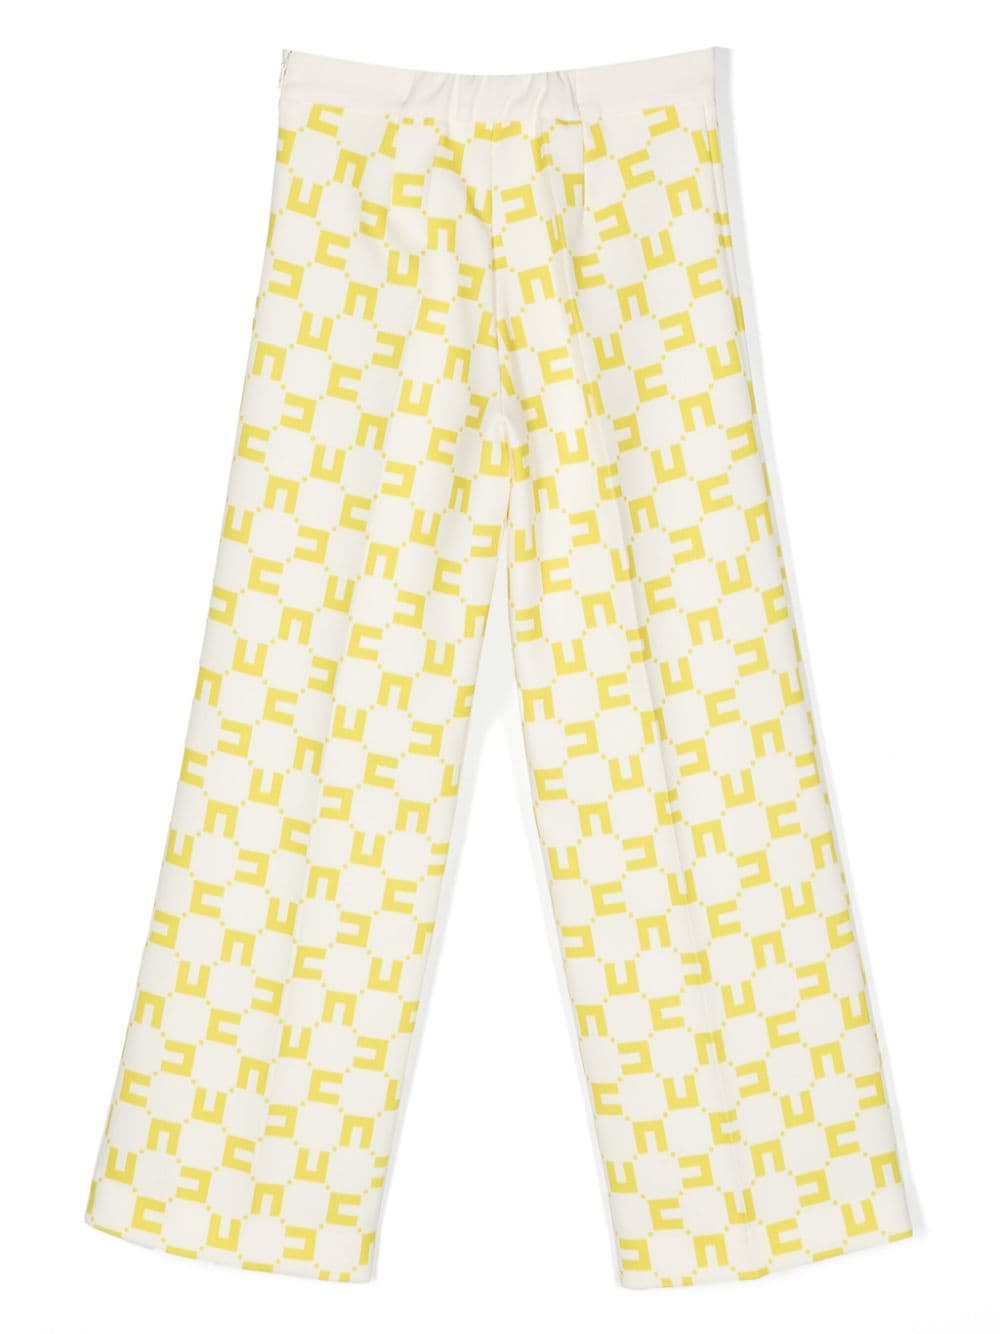 Pantaloni bianco/gialli bambina